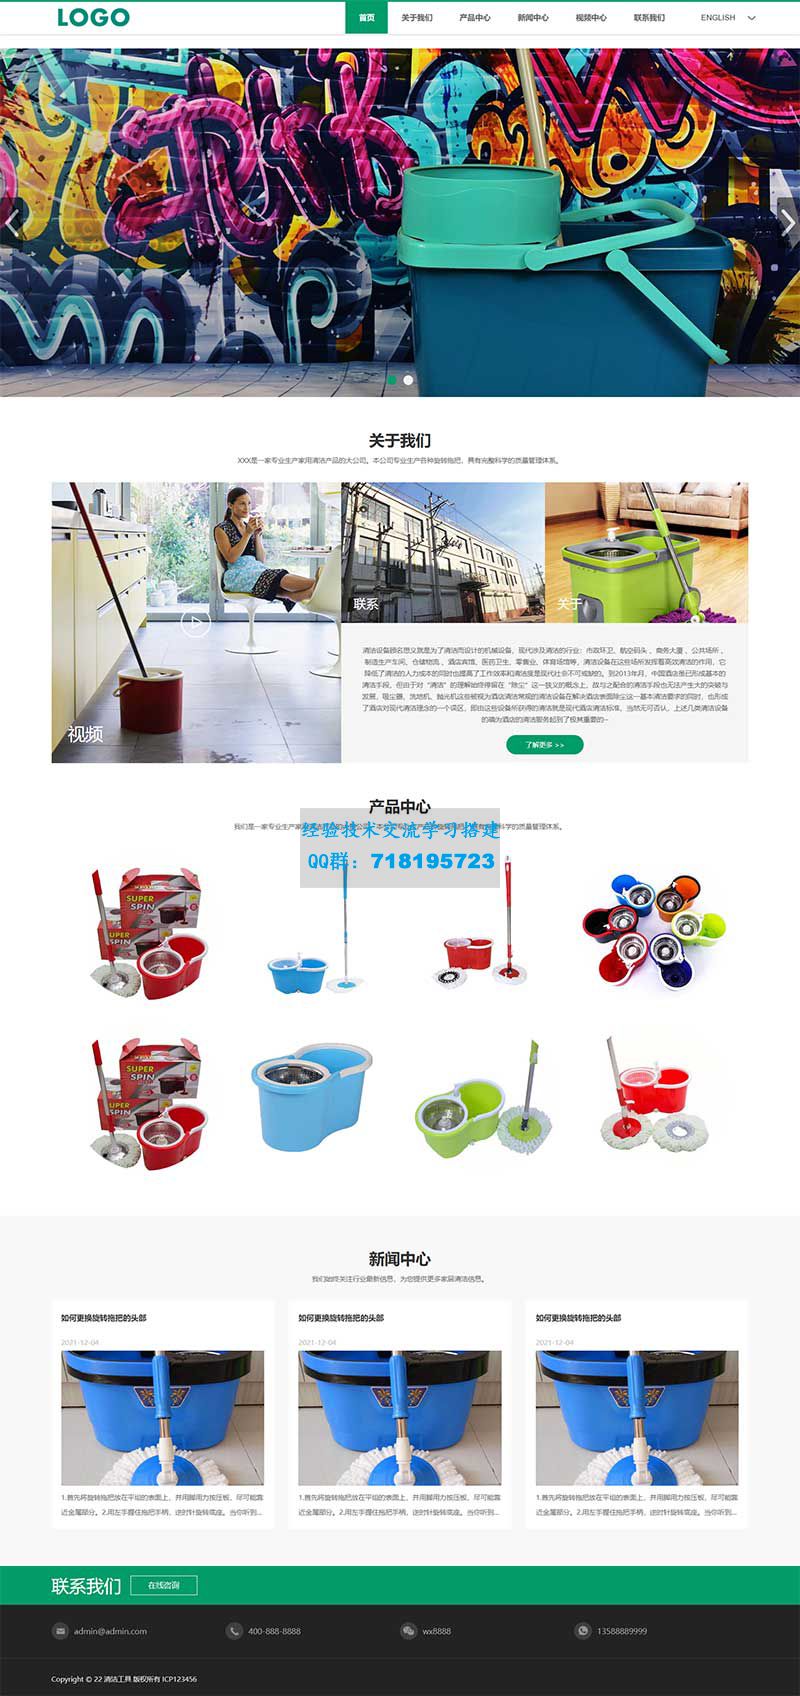     外贸清洁设备网站源码 pbootcms中英文双语清洁工具企业网站模板
